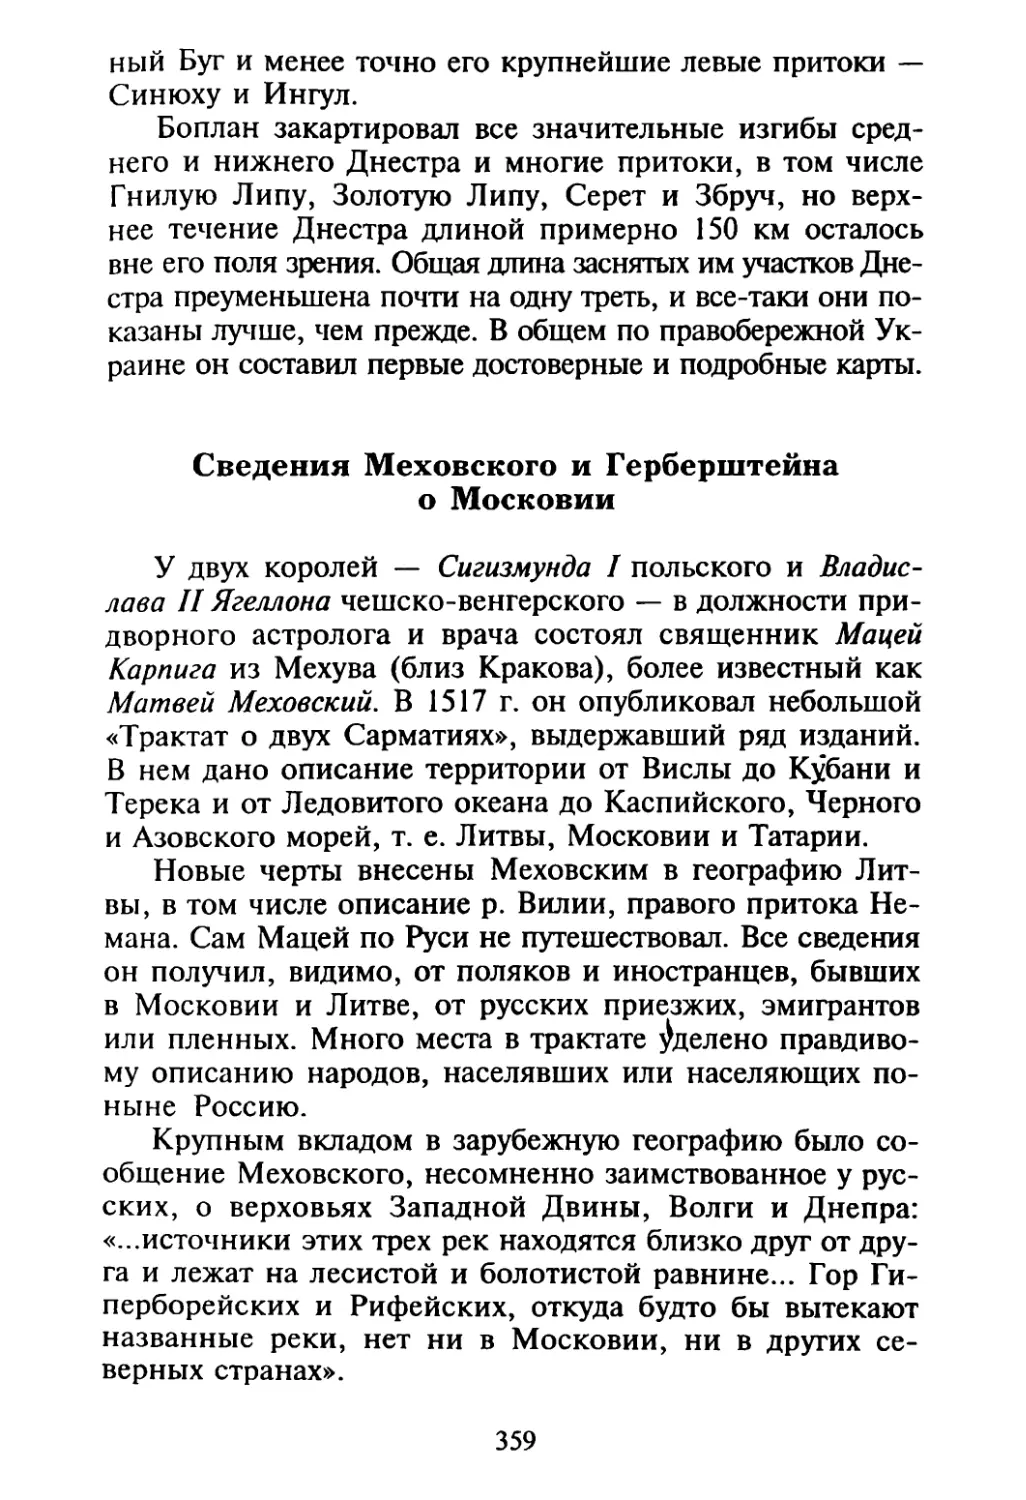 Сведения Меховского и Герберштейна о Московии